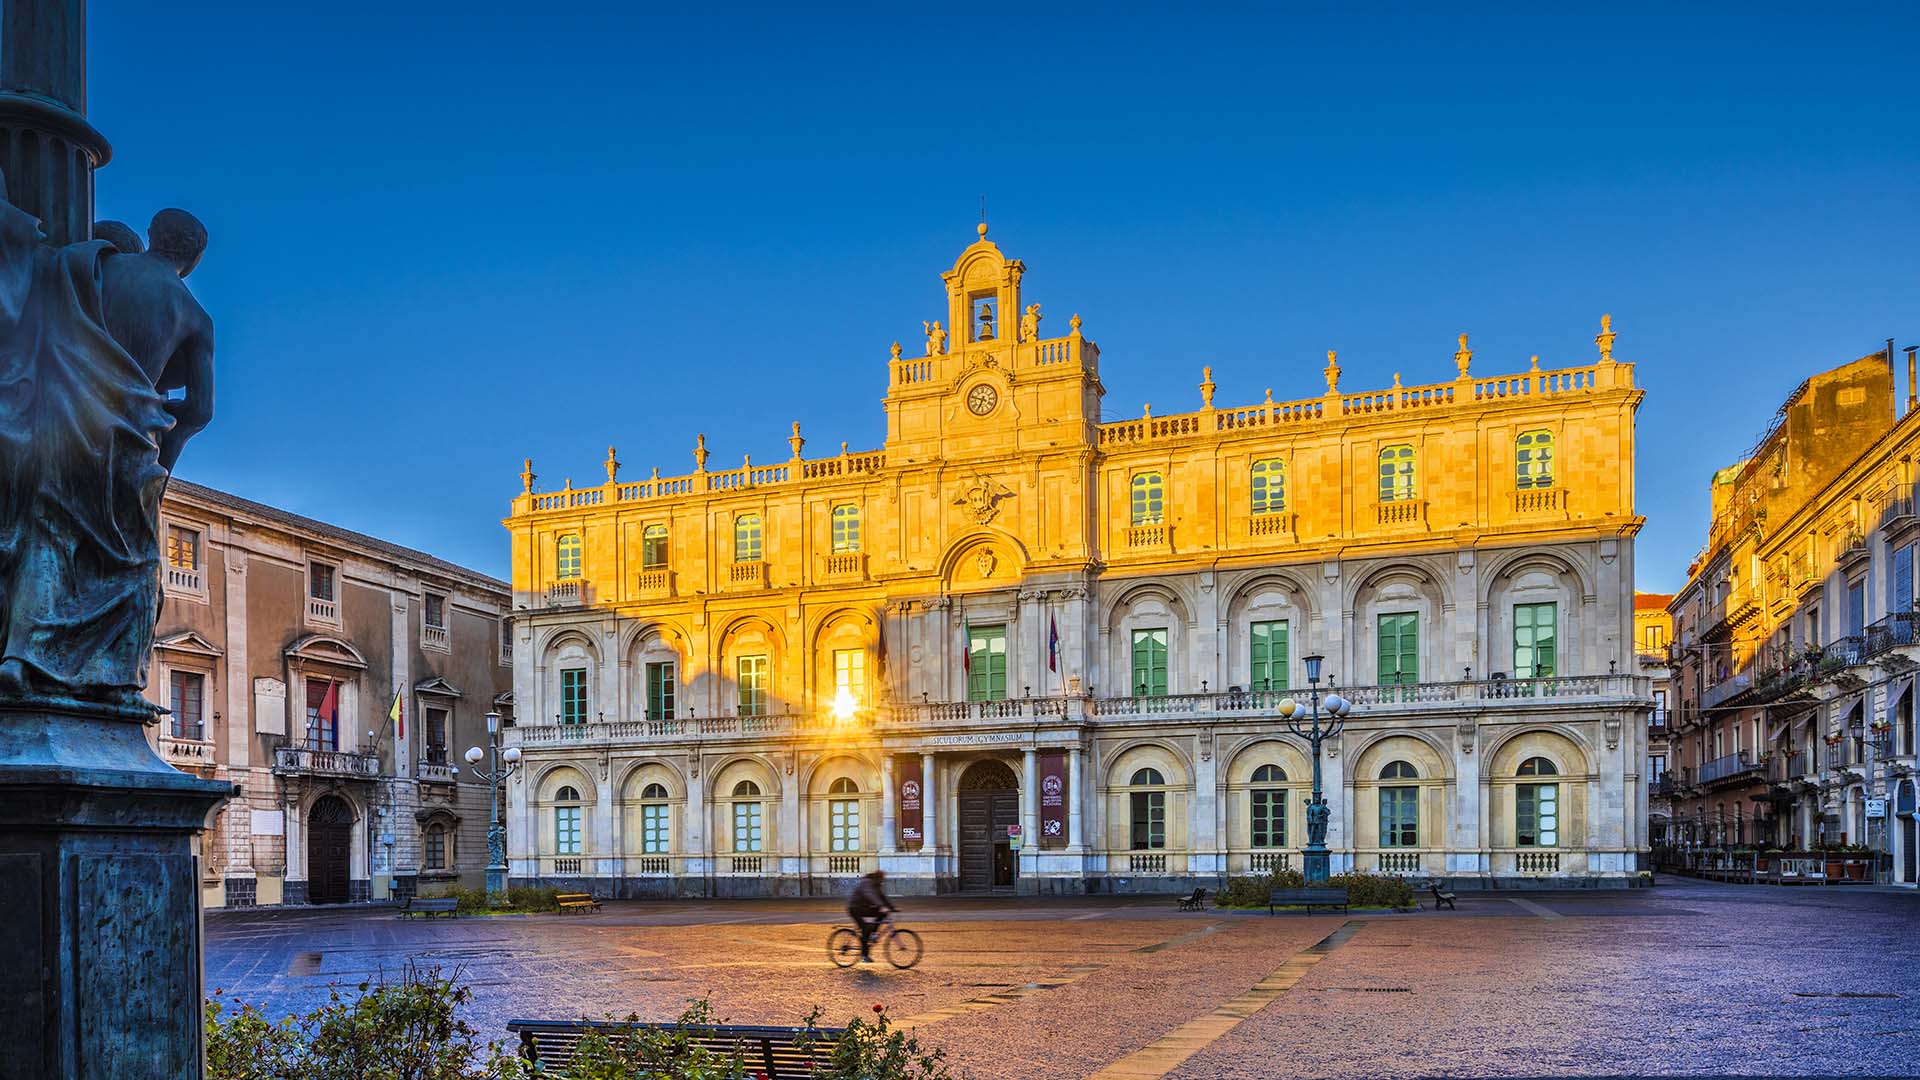 Alba sul palazzo di una delle più antiche Università d’Europa.